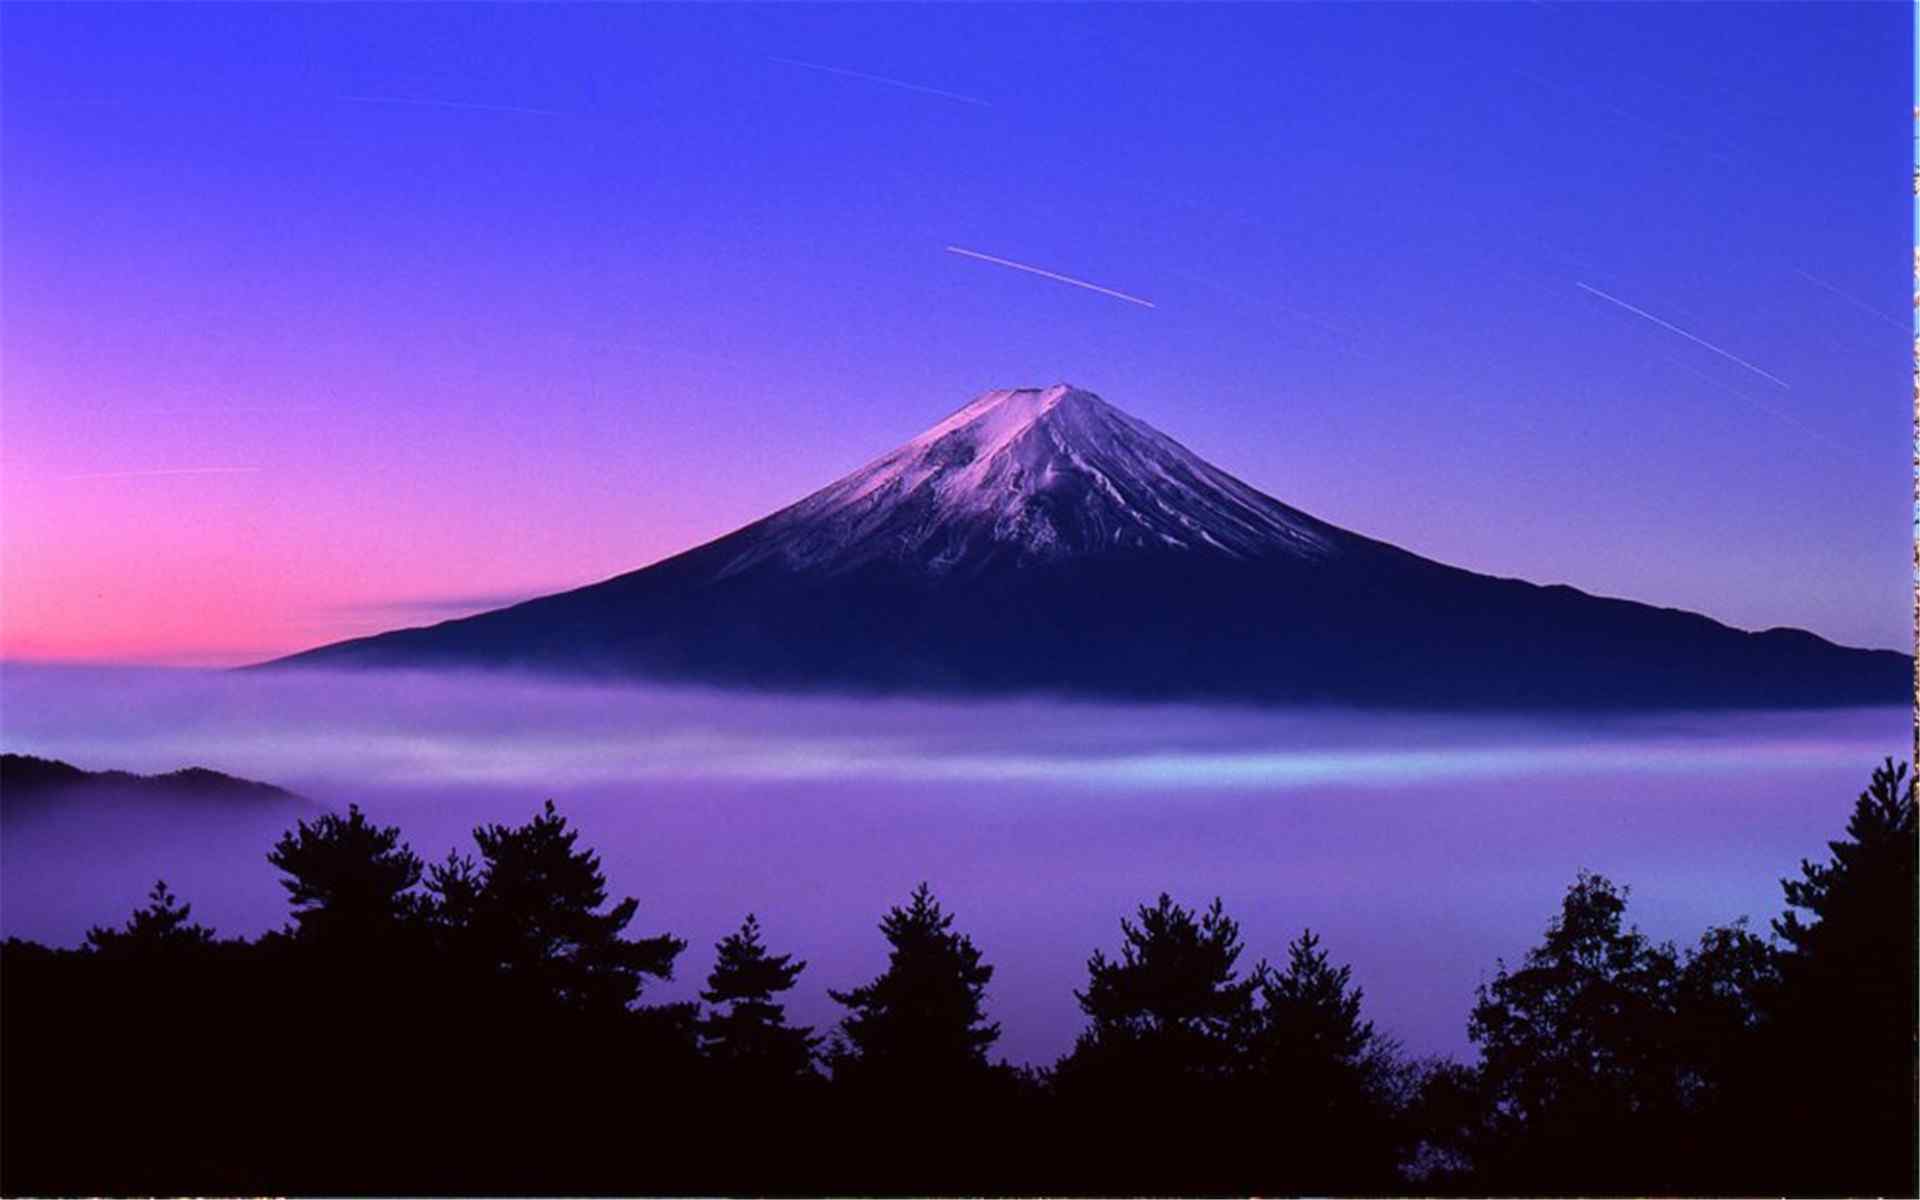 日本富士山唯美风景图片高清壁纸